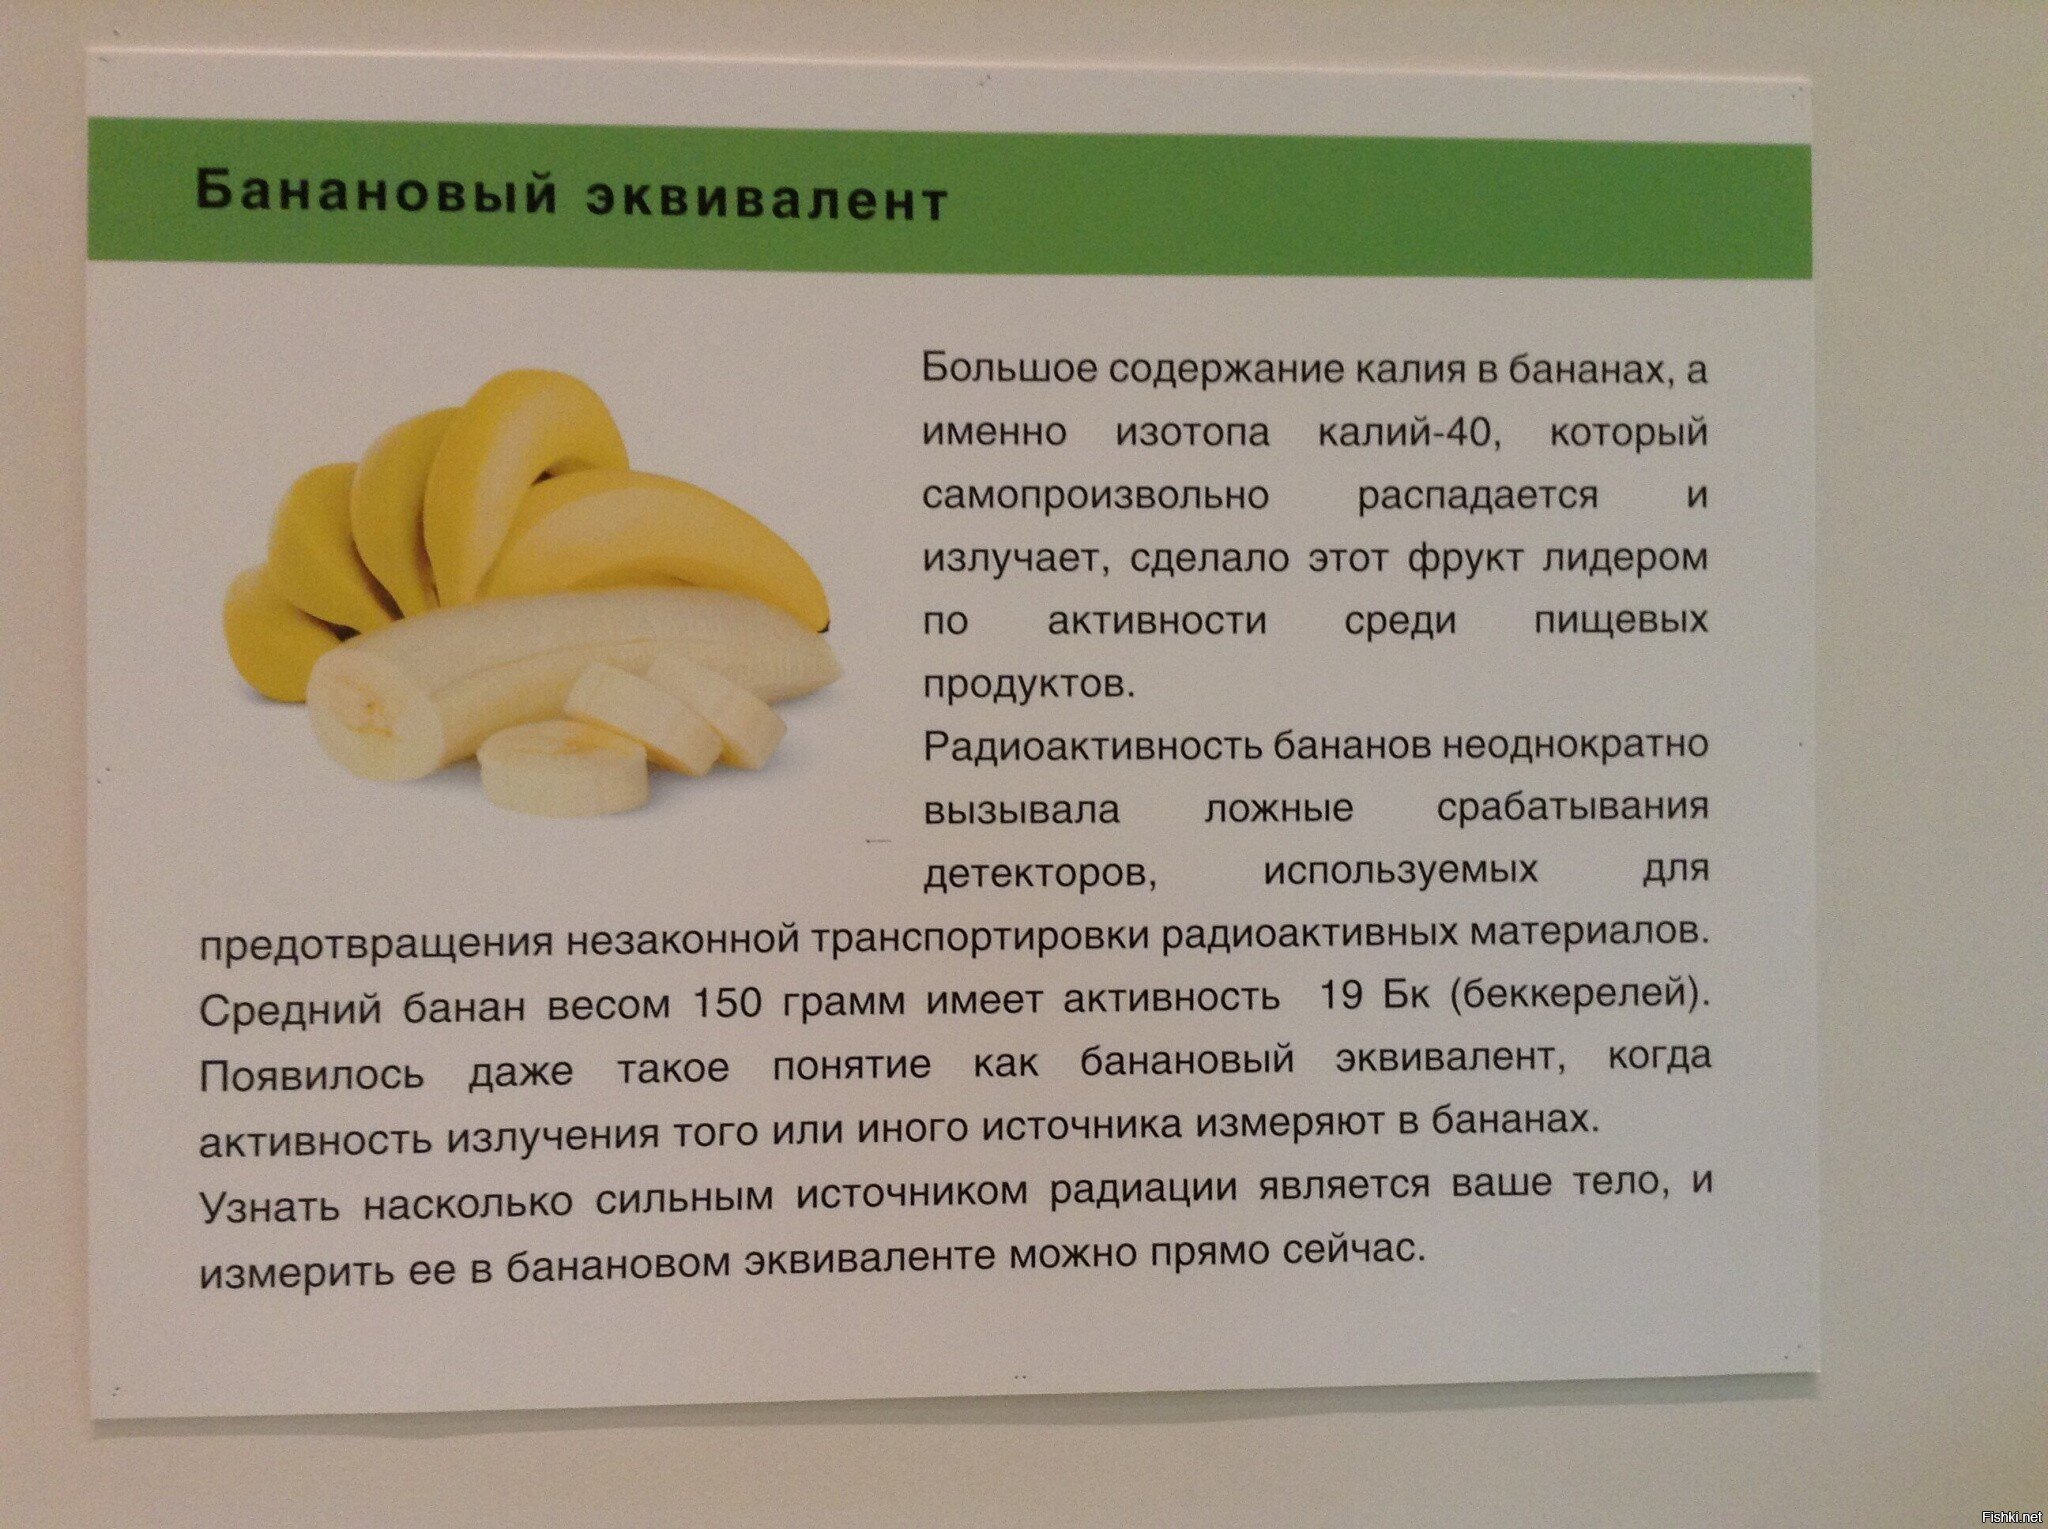 10 бананов съеденных за день обеспечат Вам дозу радиации рентгенкабинета